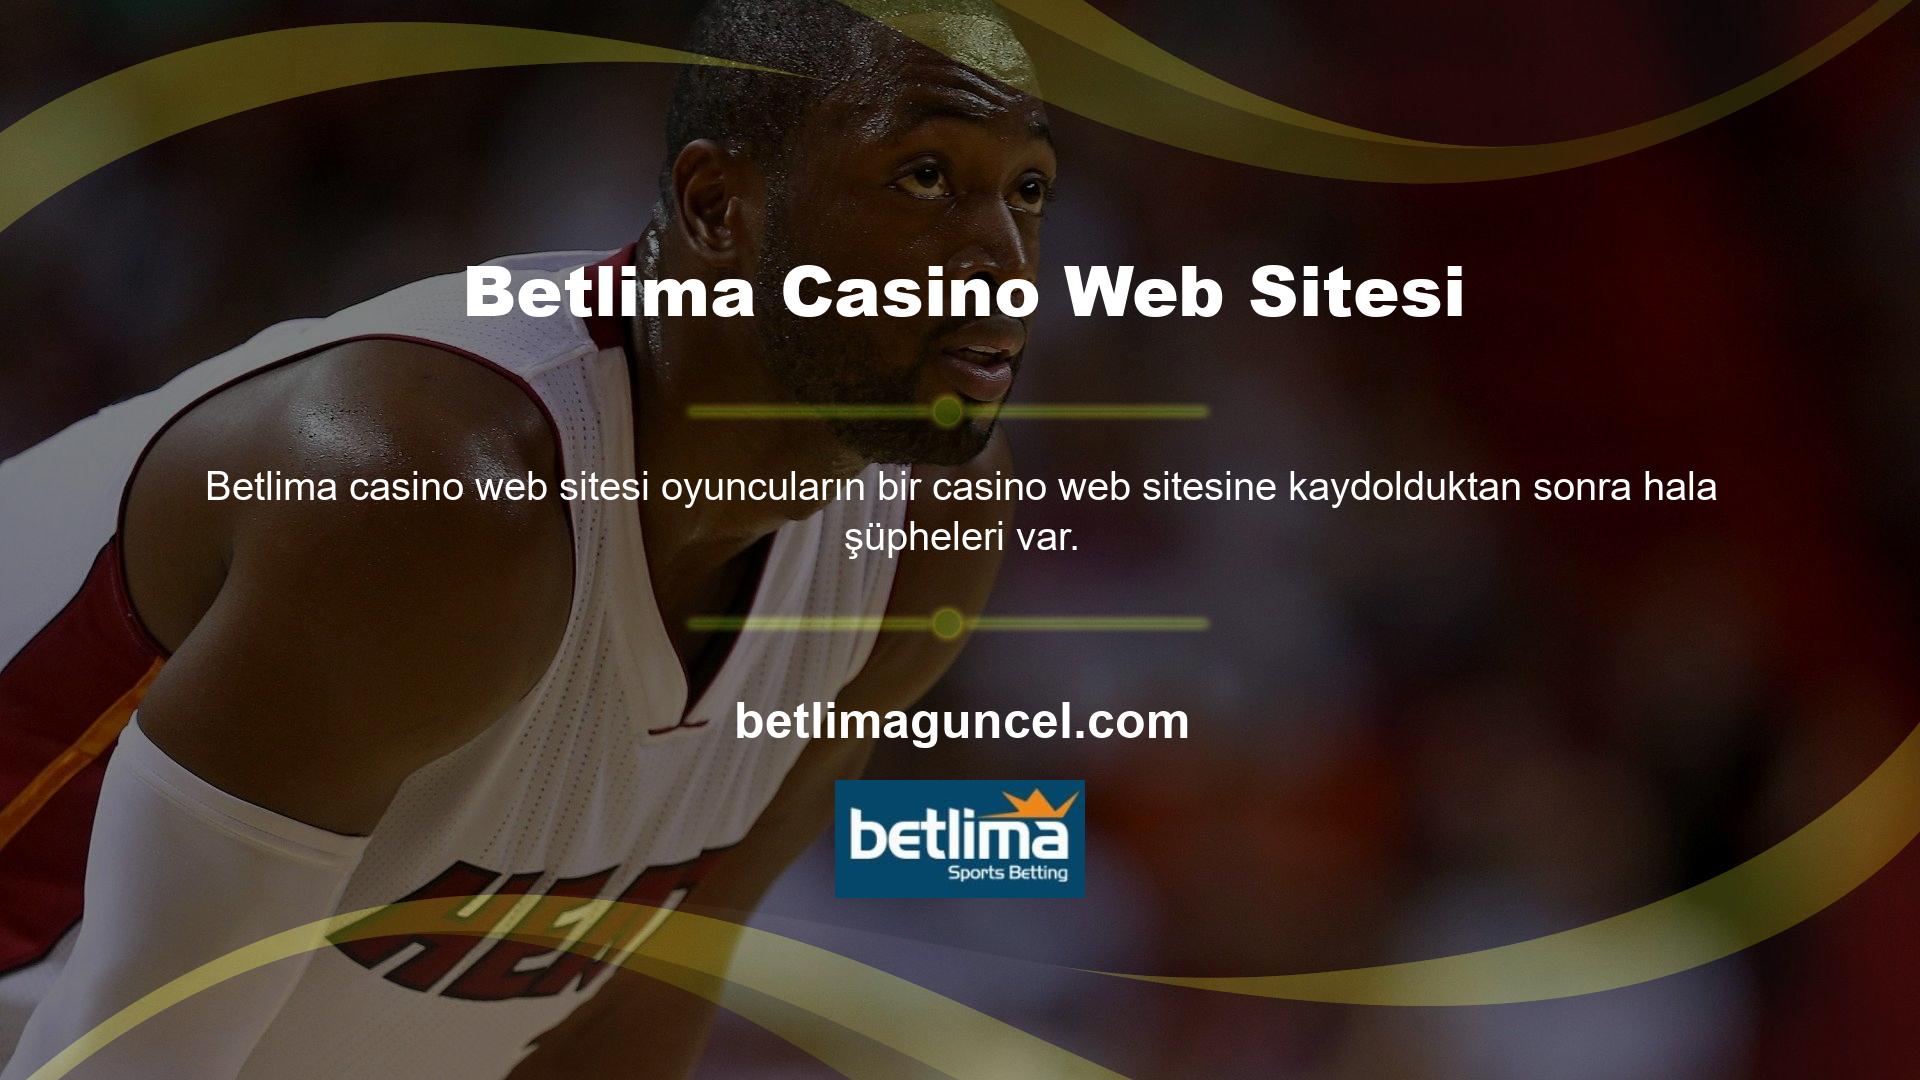 Öncelikle casino web sitesi gerekli gördüğü her türlü belgeyi veya güvenlik sorusunu sorma hakkını saklı tutar